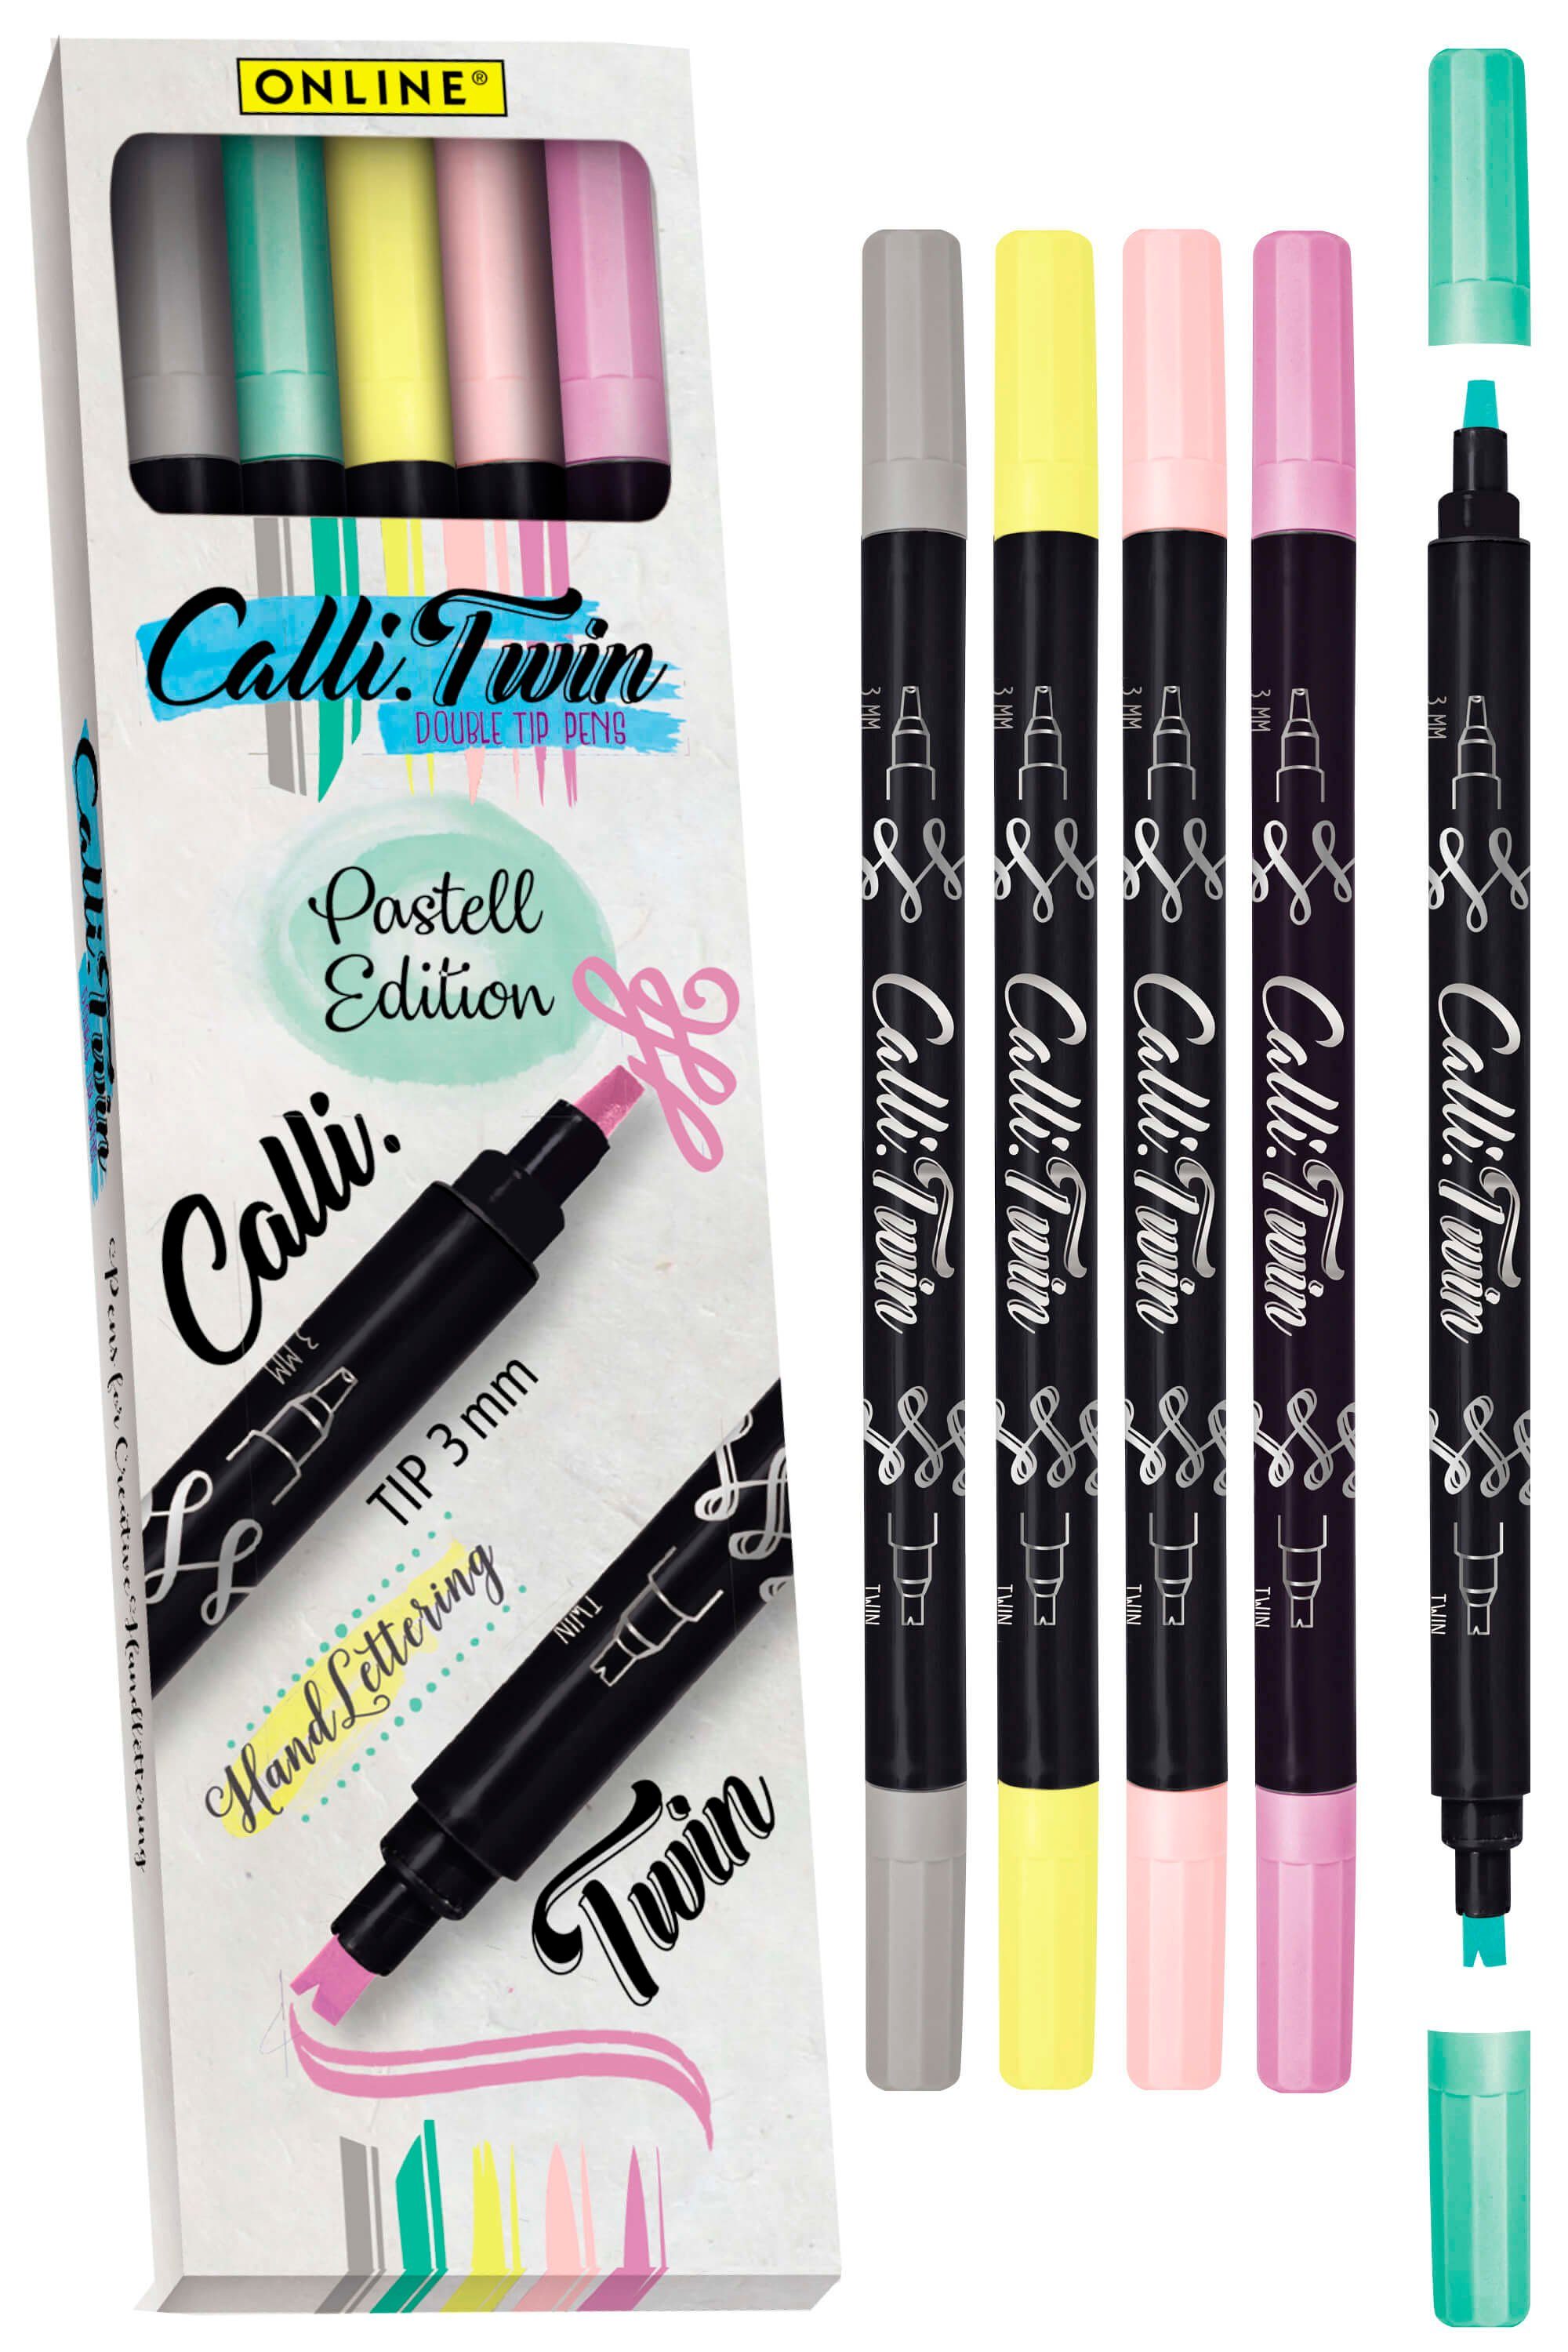 5x Pens, Handlettering Set, verschiedene Online Spitzen bunte Stifte Pastel Pen Brush Fineliner Calli.Twin,